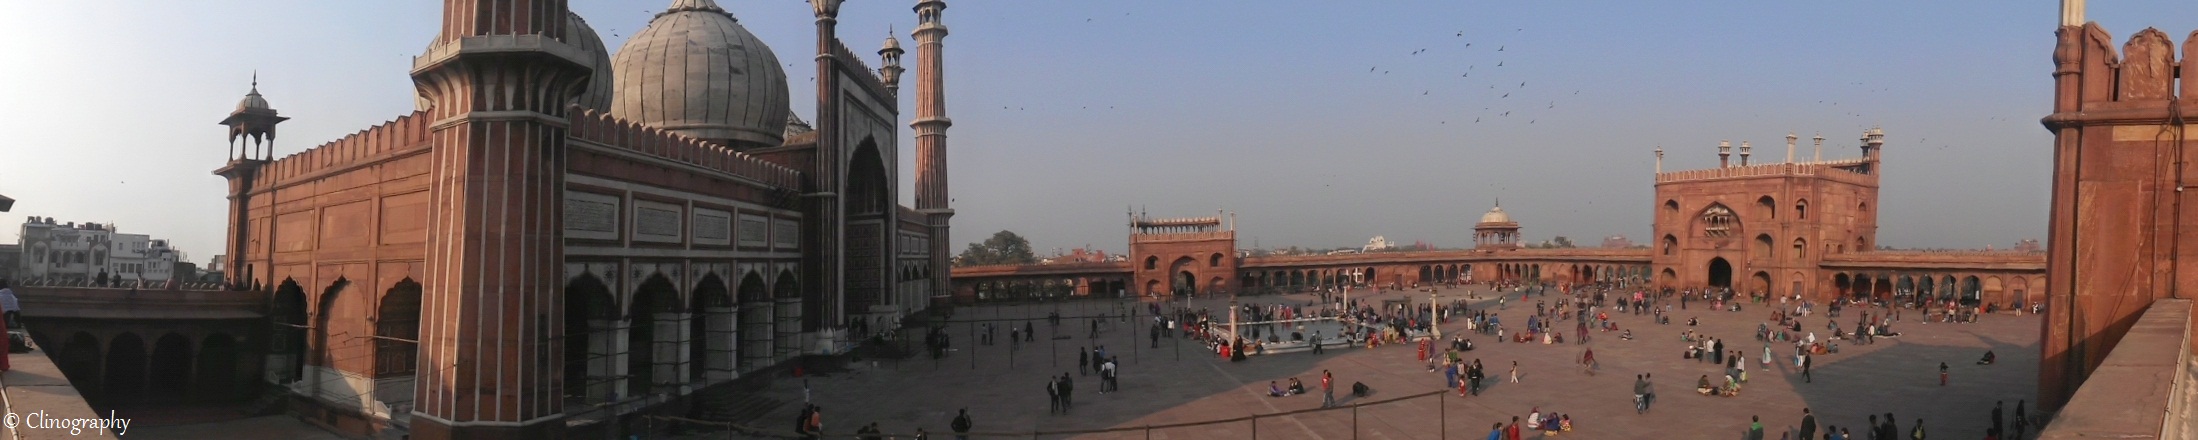 delhi ki jama masjid wallpaper,stadtplatz,gebäude,stadt,die architektur,monument